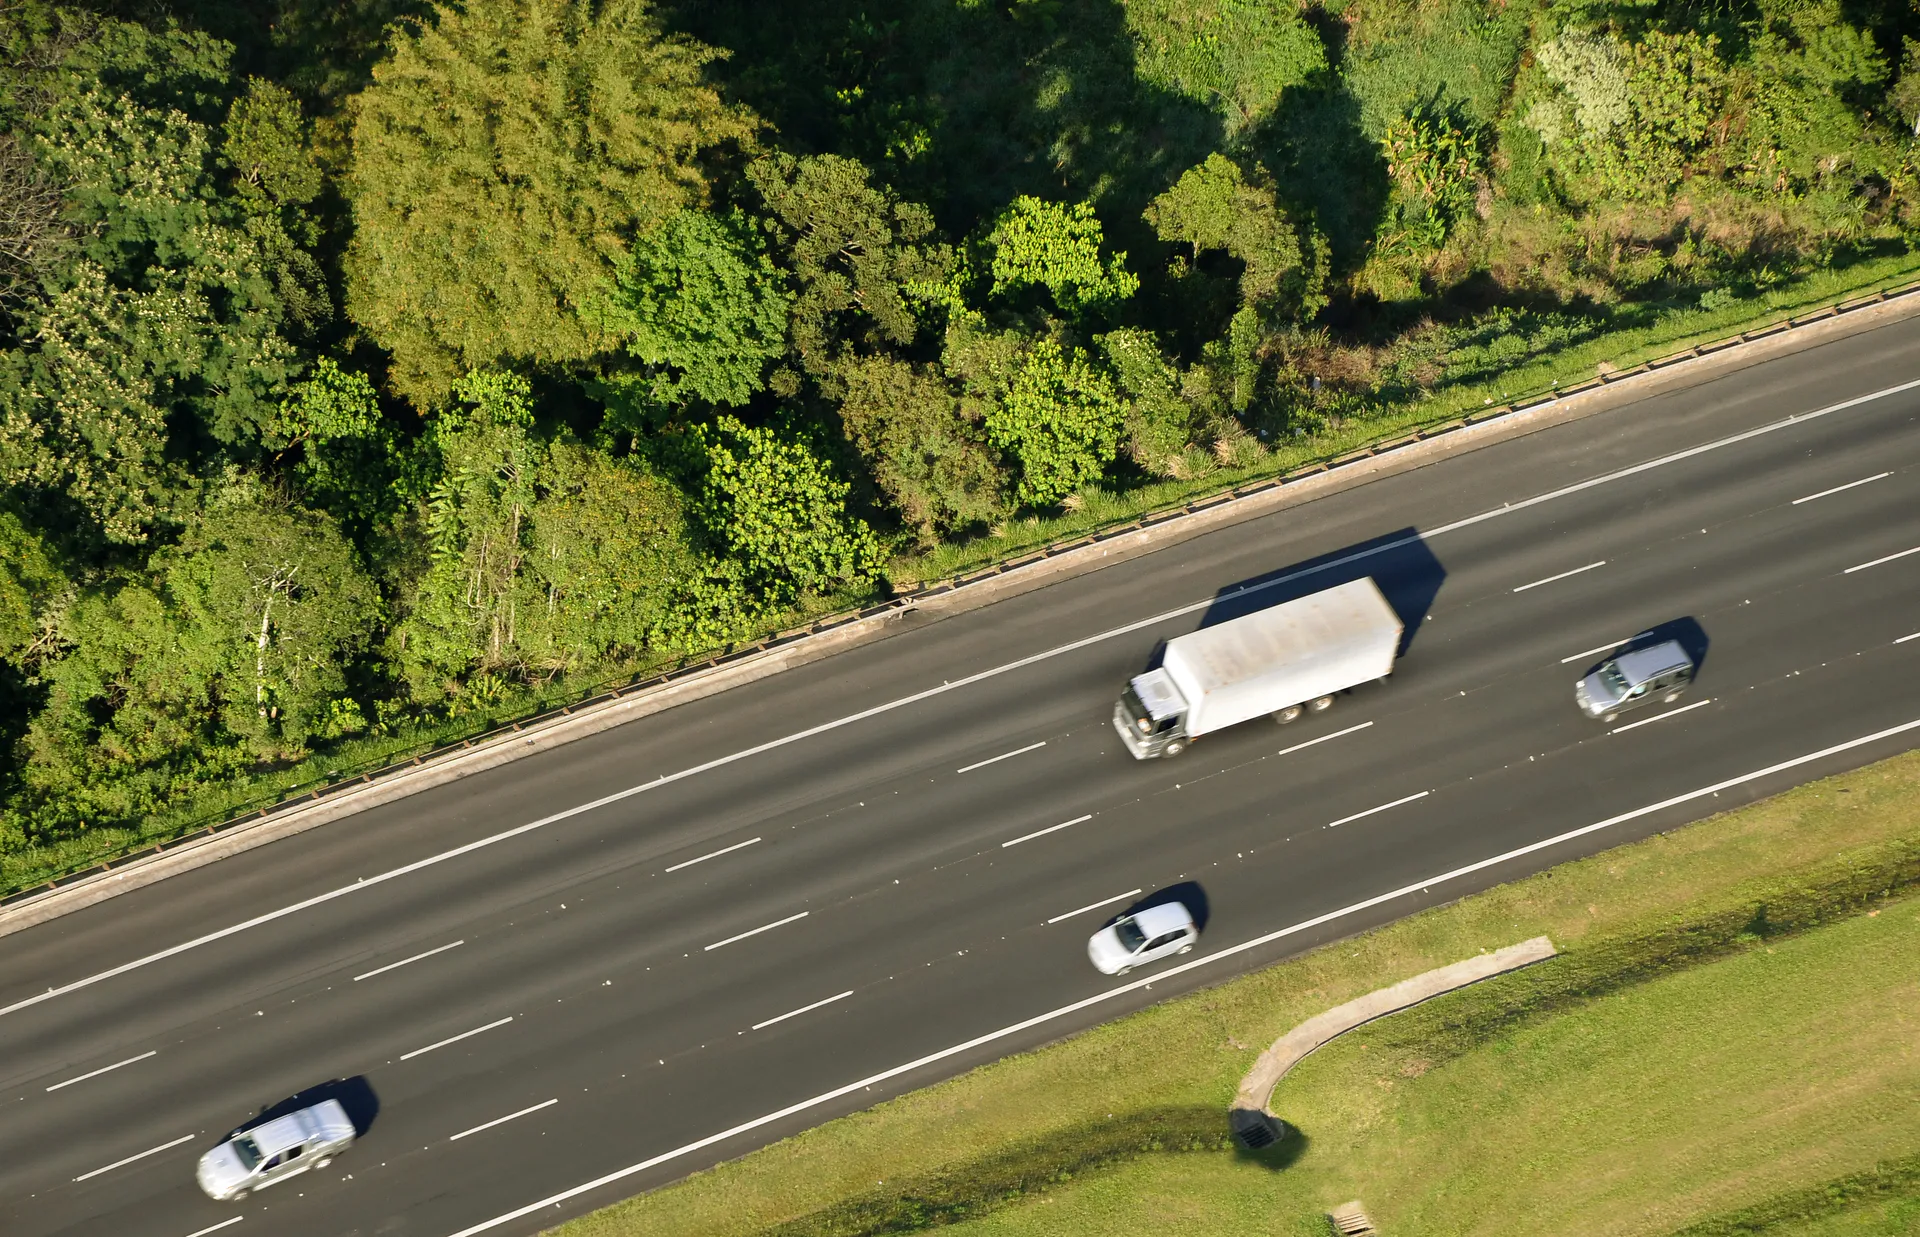 Vista aérea de um caminhão e dois carros andando por uma rodovia ladeada por vegetação